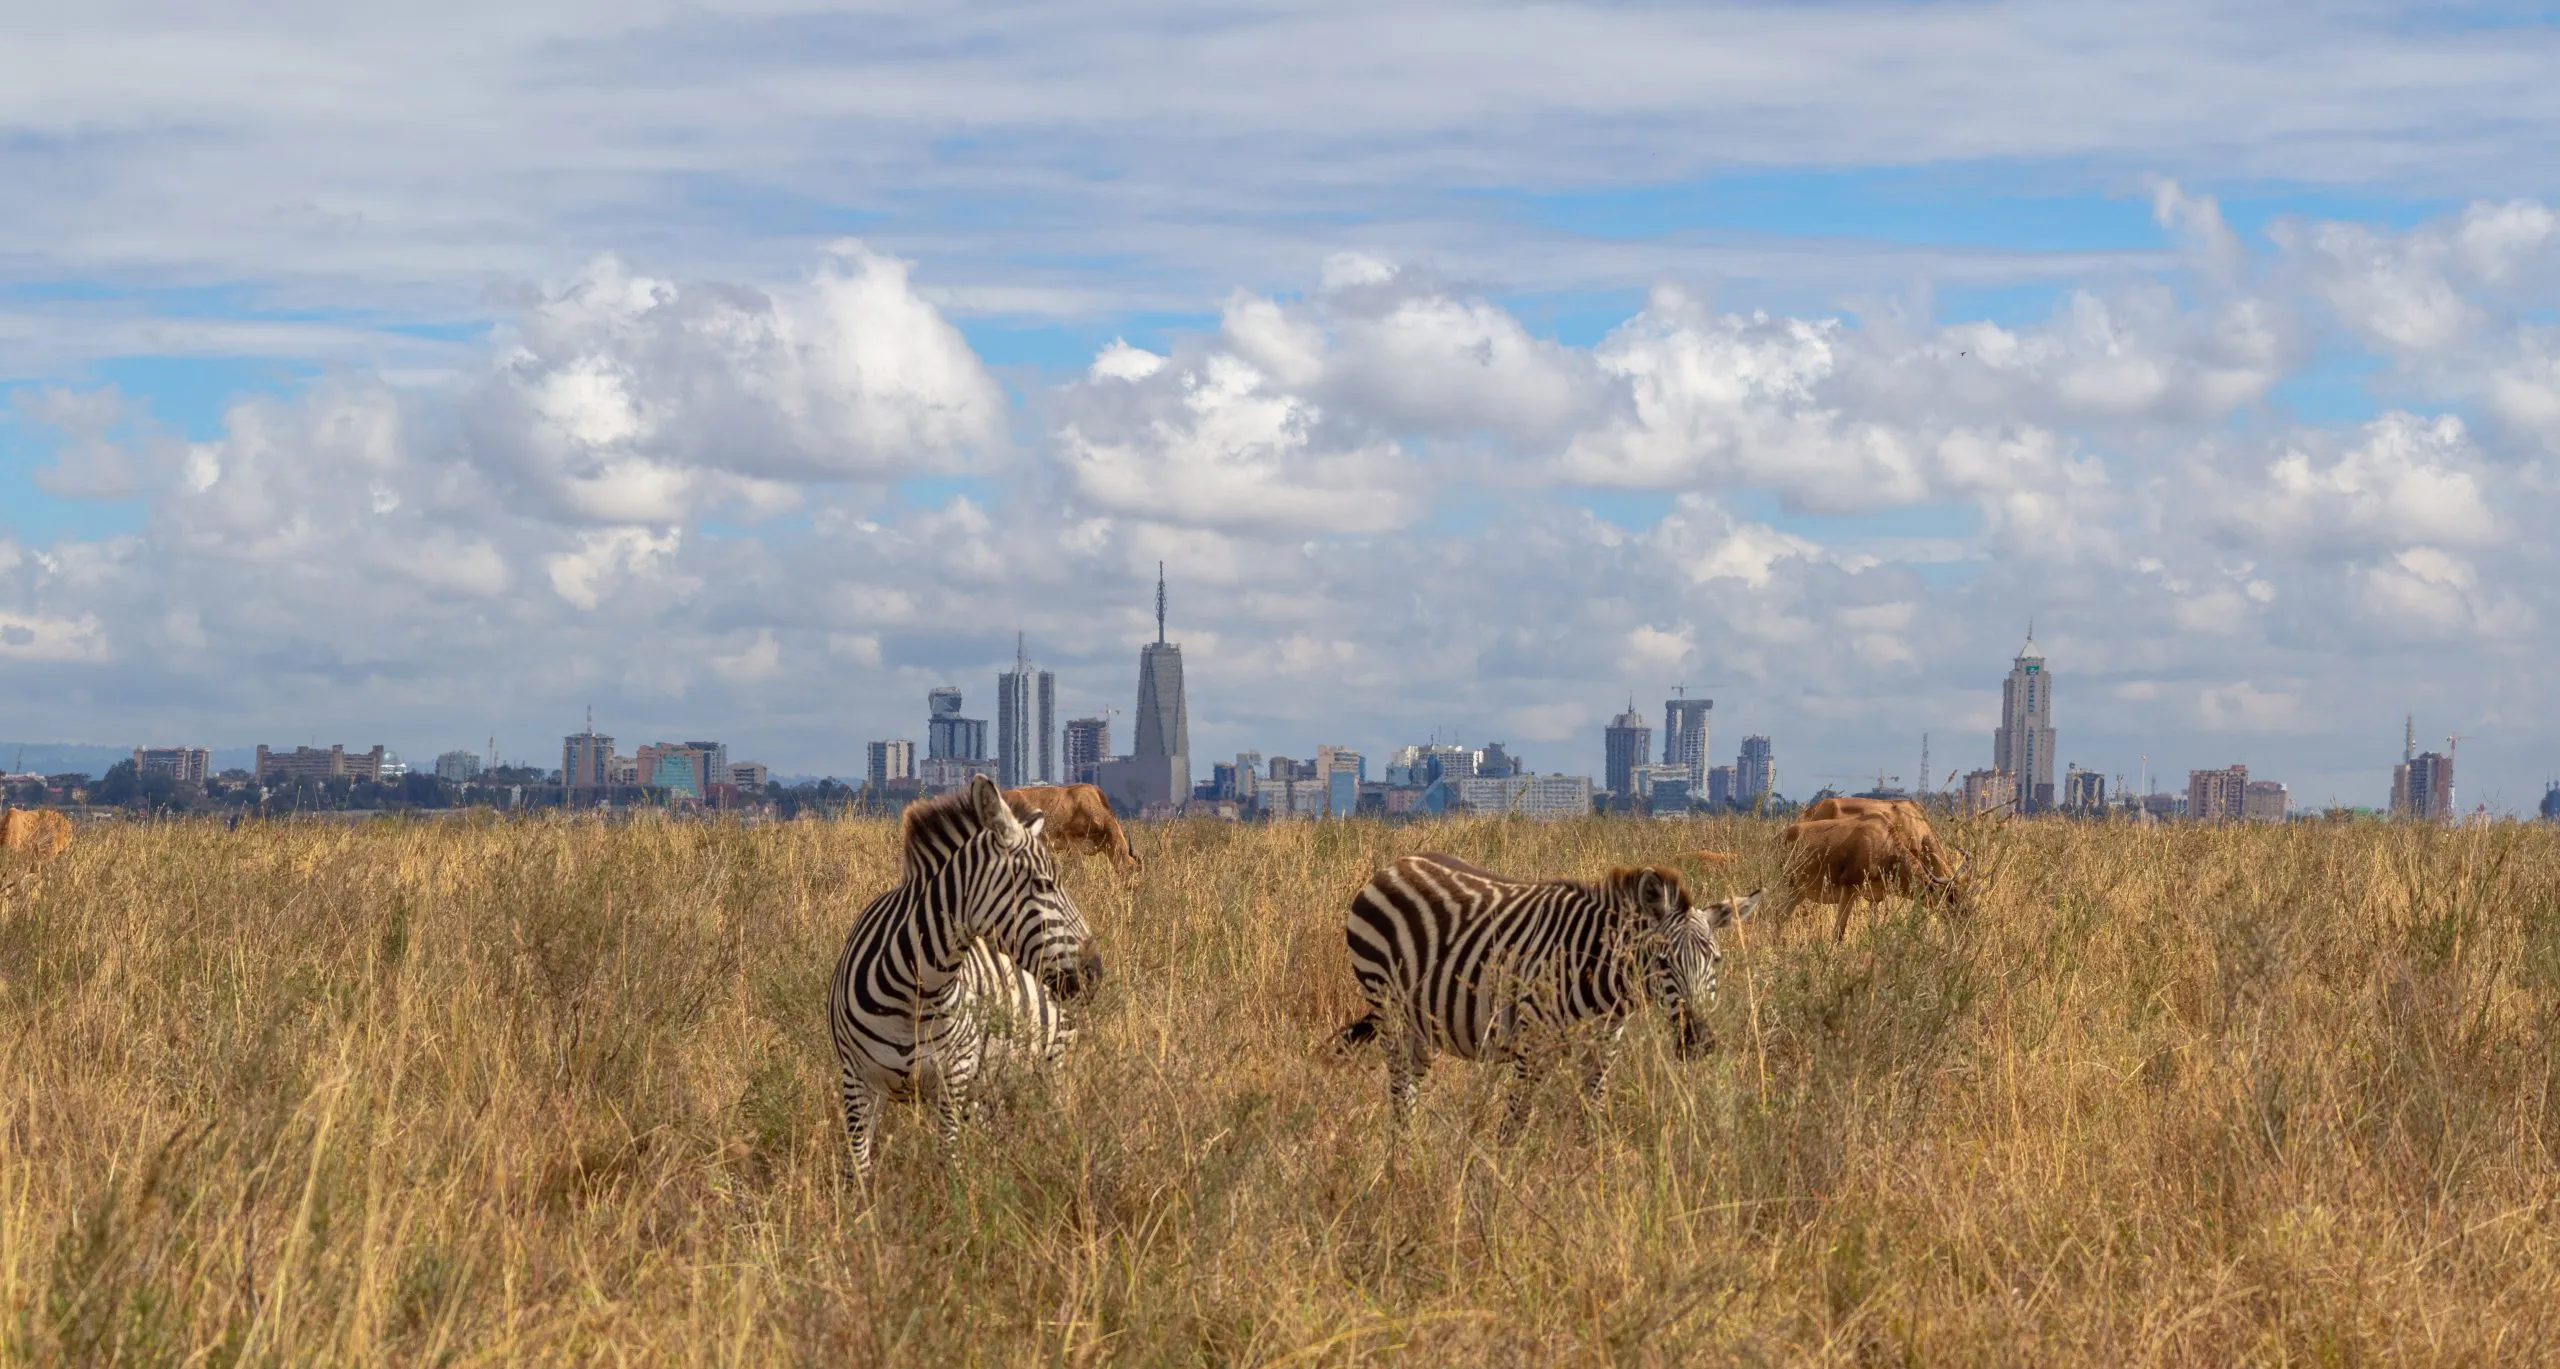 animaux de la savane mangeant de l'herbe dans le parc national de Nairobi, en Afrique, avec les gratte-ciel de Nairobi en arrière-plan.